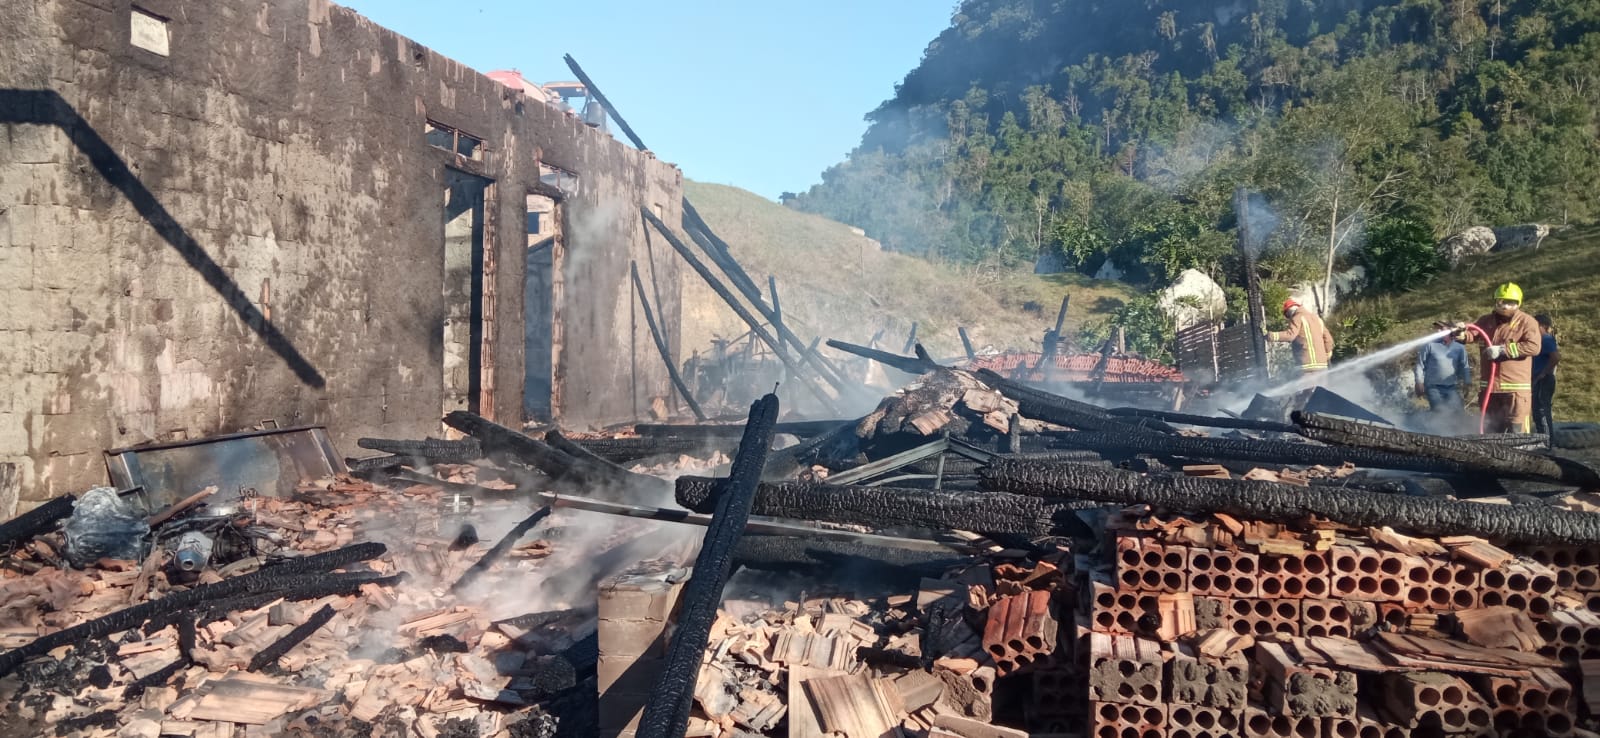 Agricultor do Alto Vale estima prejuízo acima de 50 mil reais após incêndio em estufa